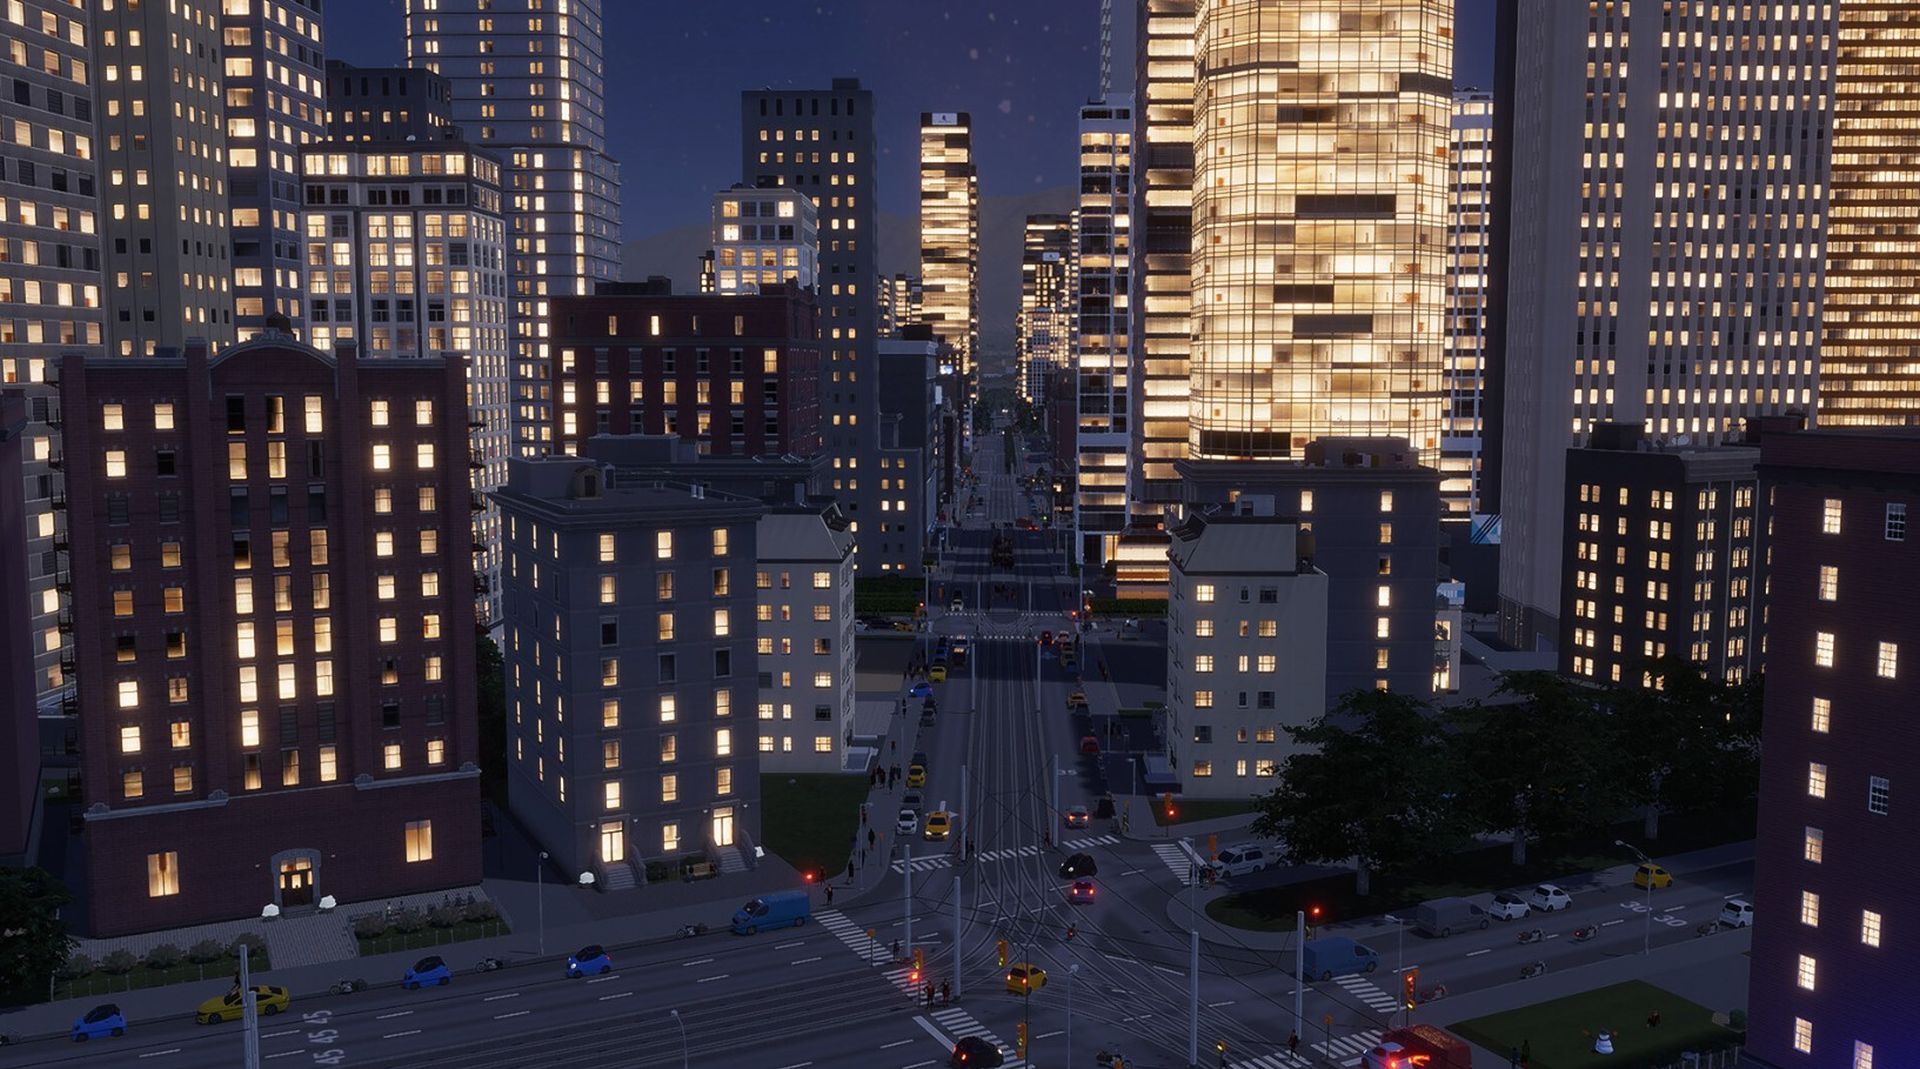 Cities Skylines 2 not working